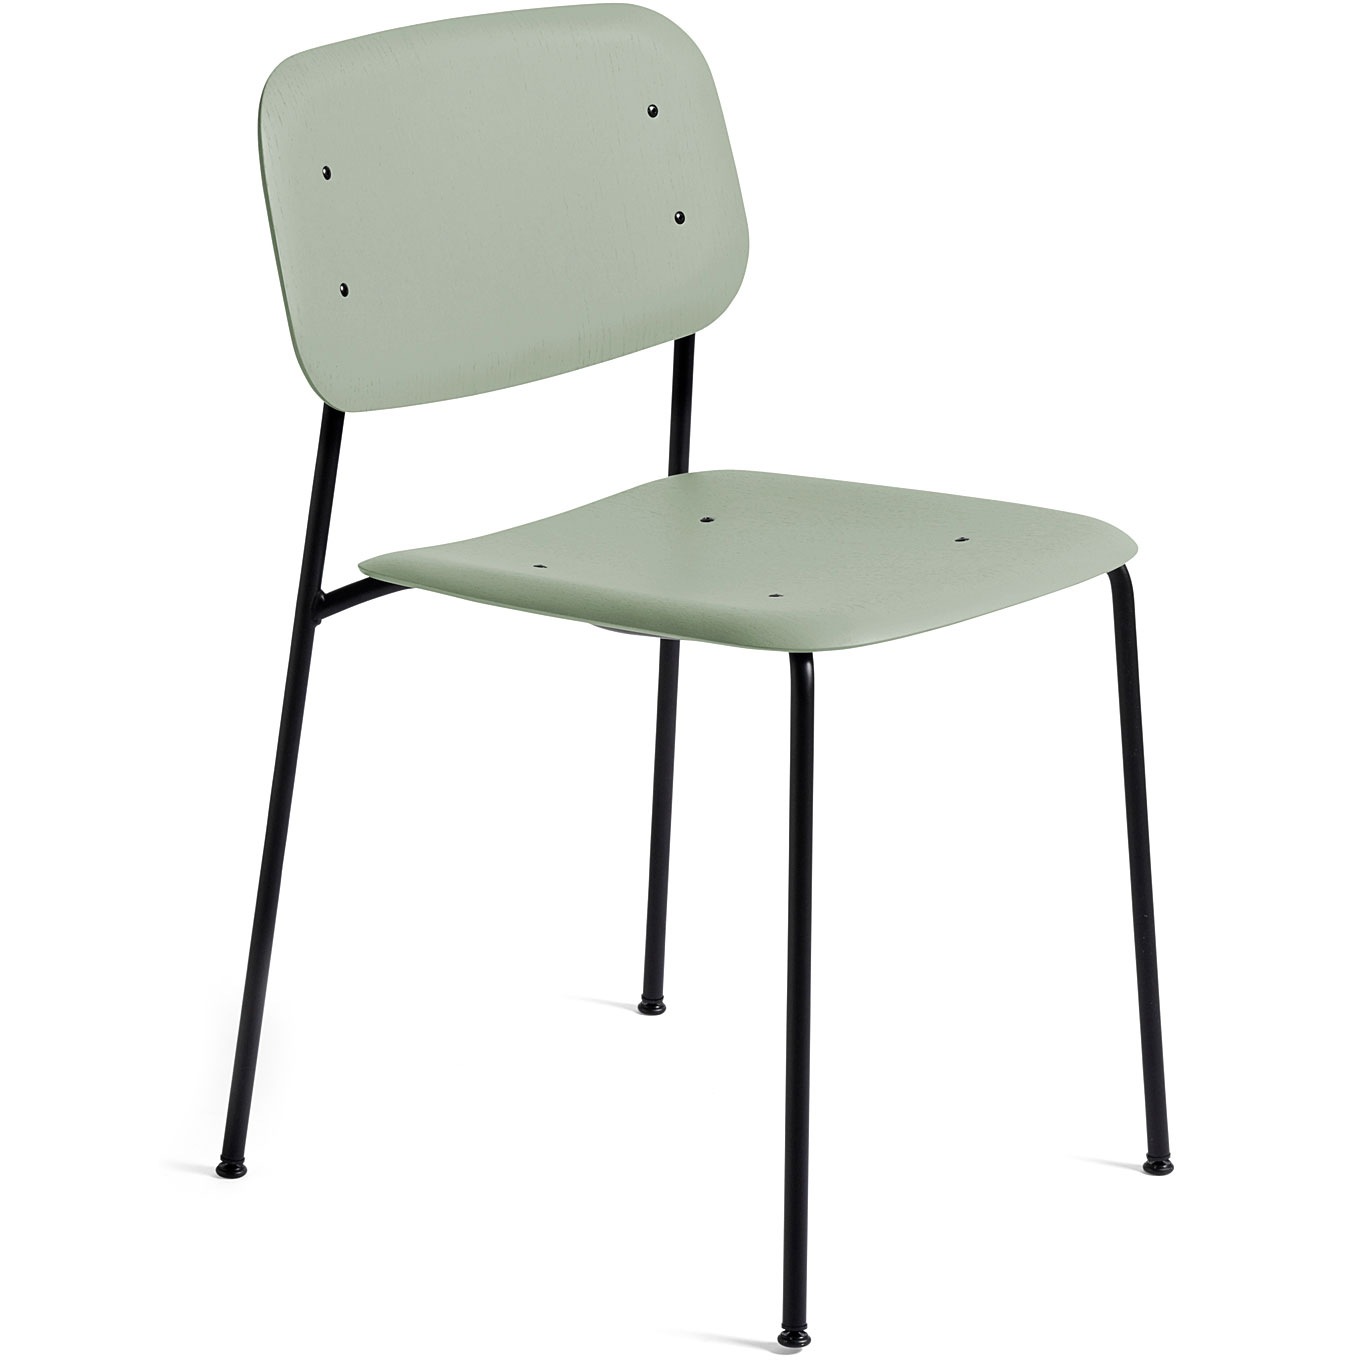 Soft Edge 40 Chair, Dusty Green